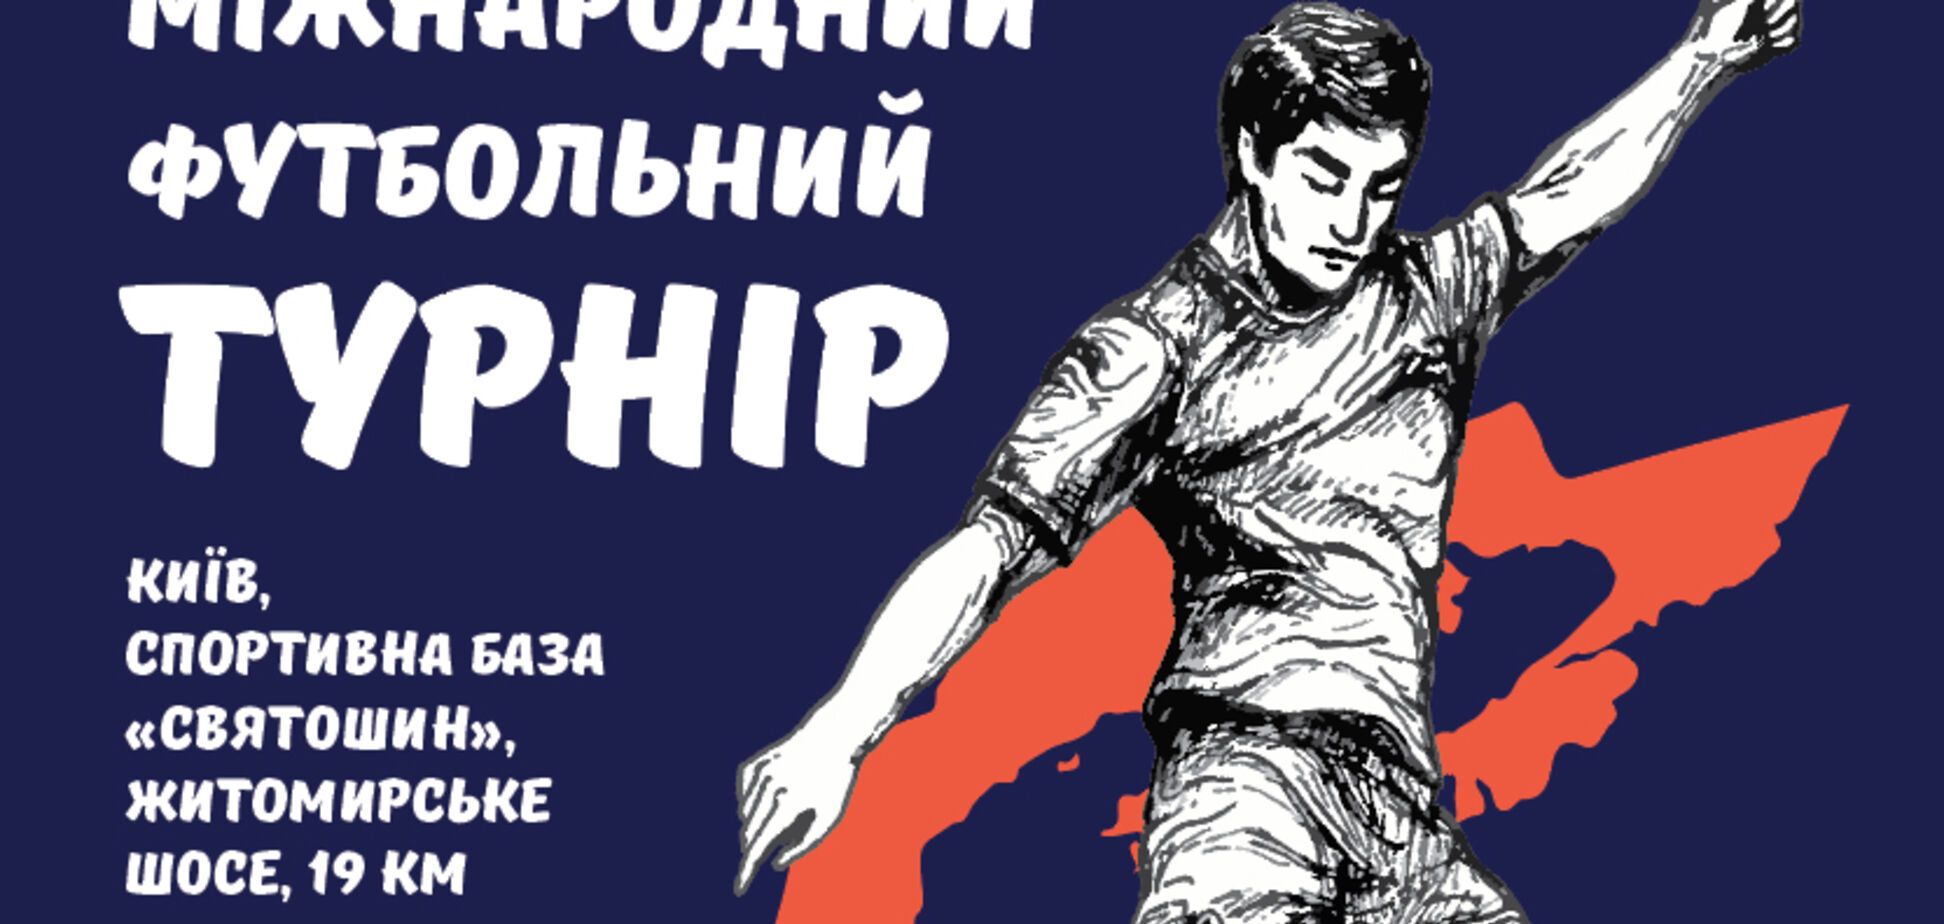 В Киеве состоится ХІІІ Международный футбольный турнир для людей с особыми потребностями Seni Cup 2018